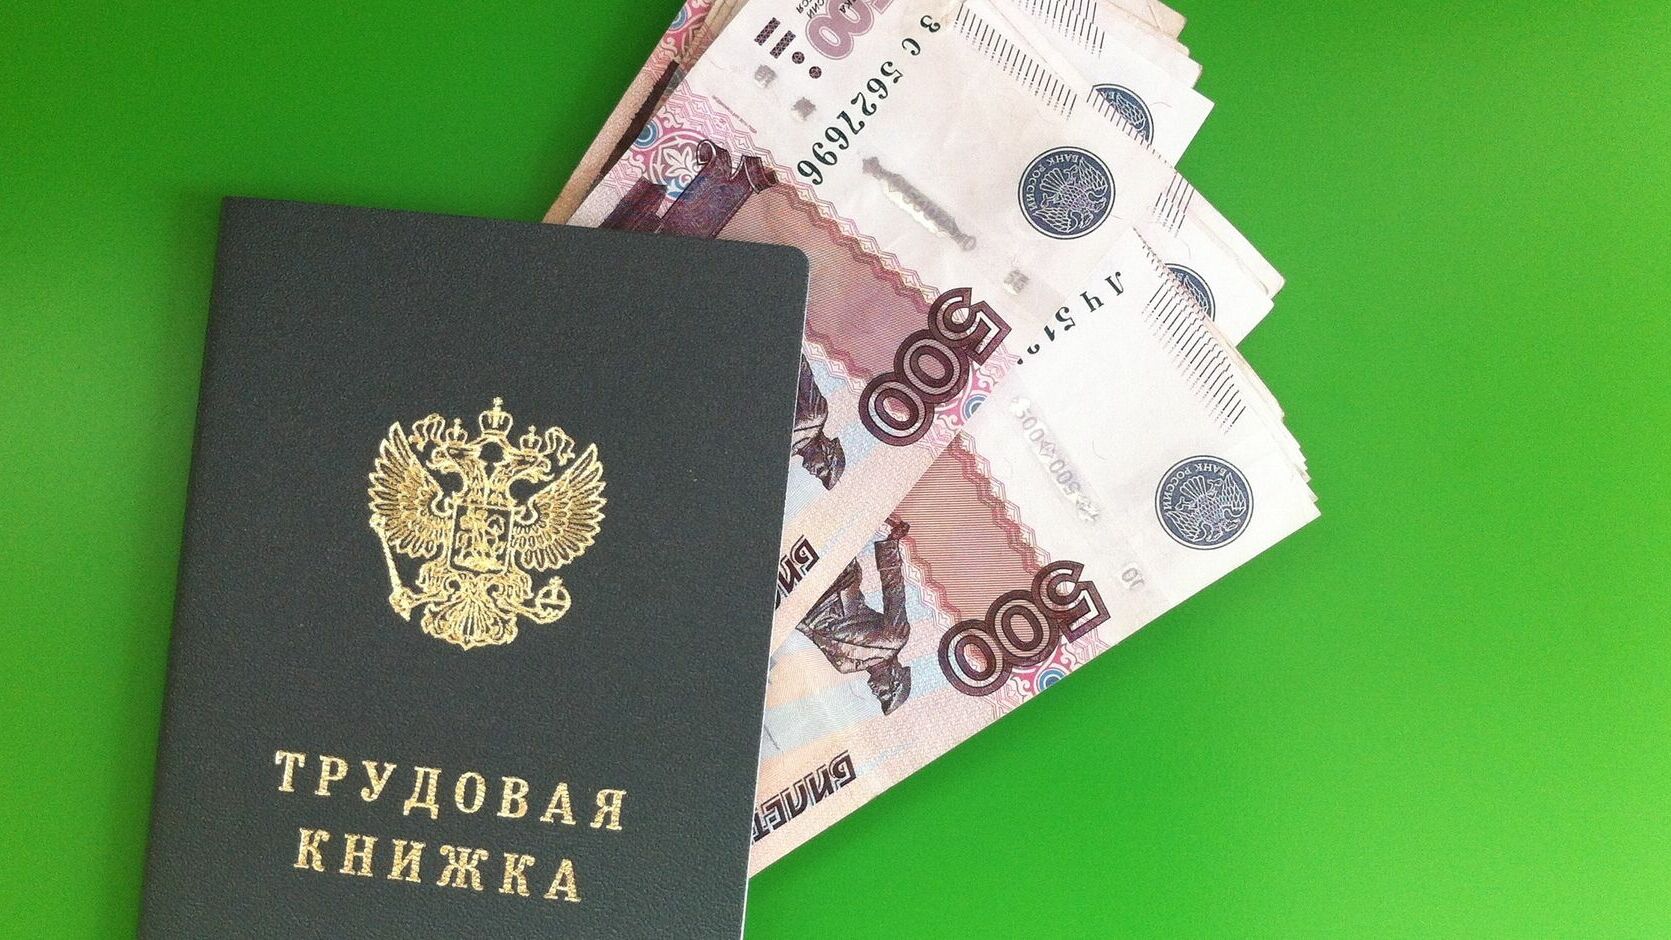 Топ-10 самых дорогих вакансий в Перми за 2015 год. С зарплатой от 300 тыс. рублей